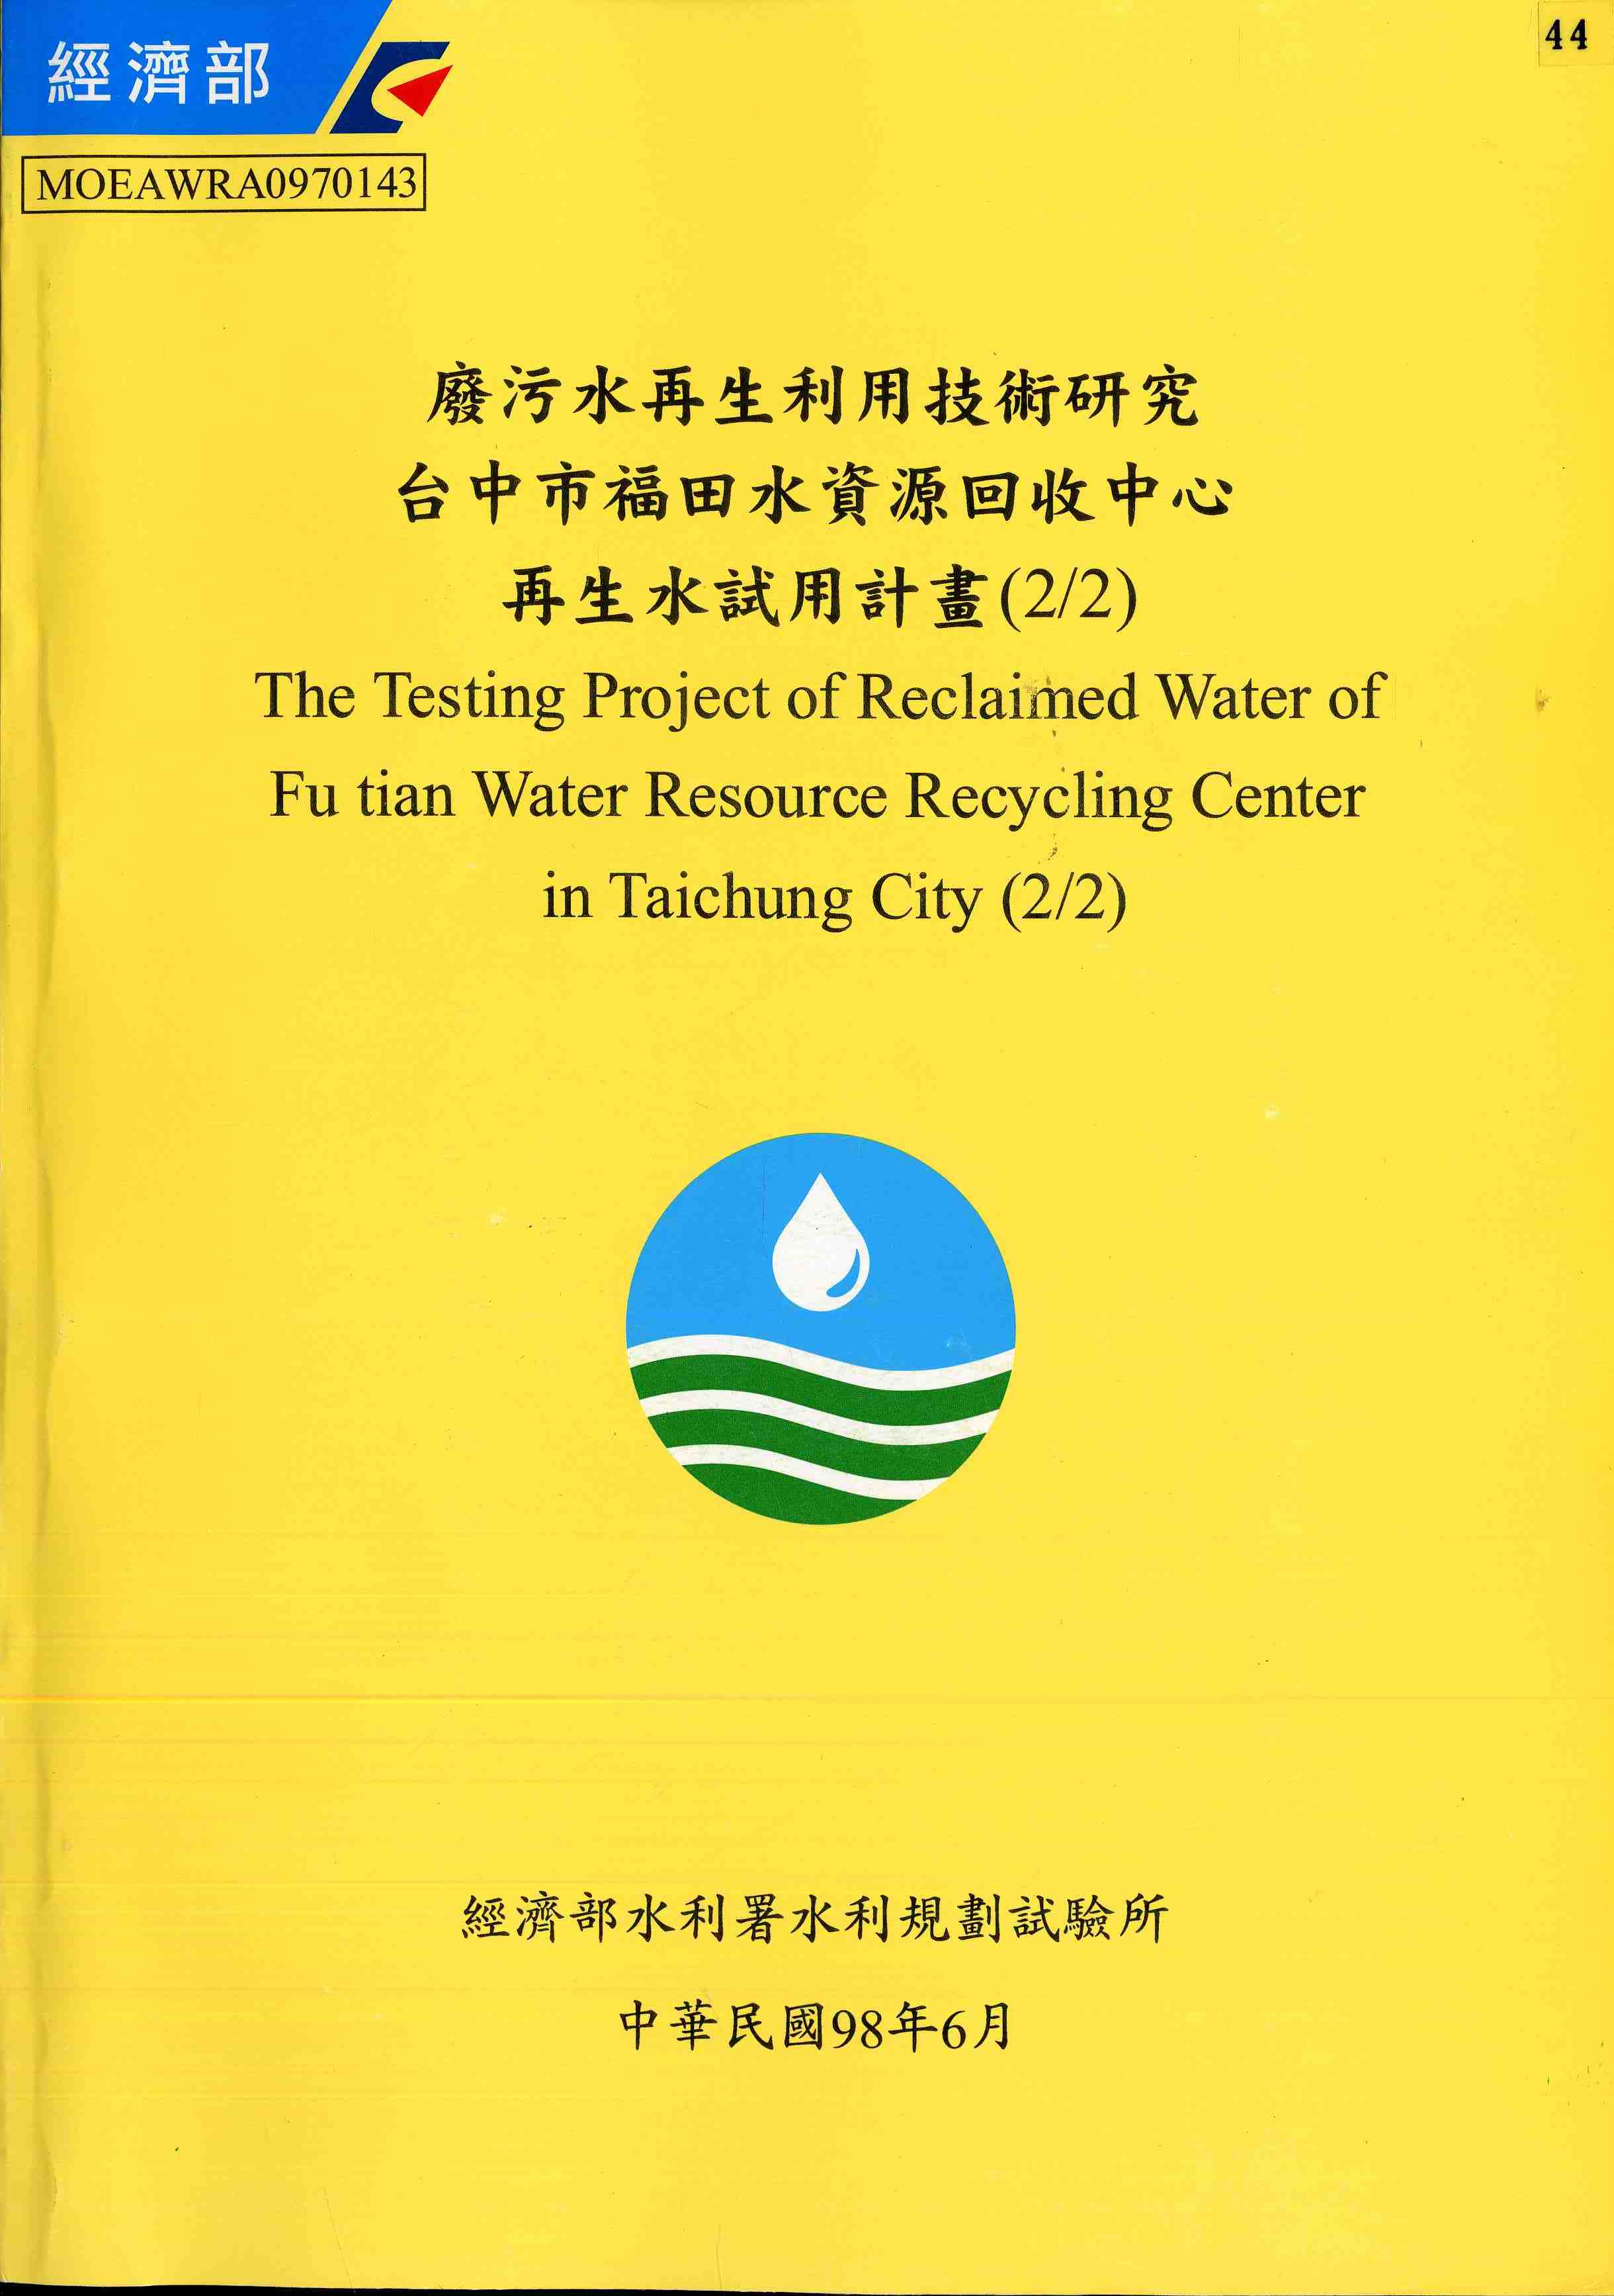 廢污水再生利用技術研究─台中市福田水資源回收中心再生水試用計畫(2/2)